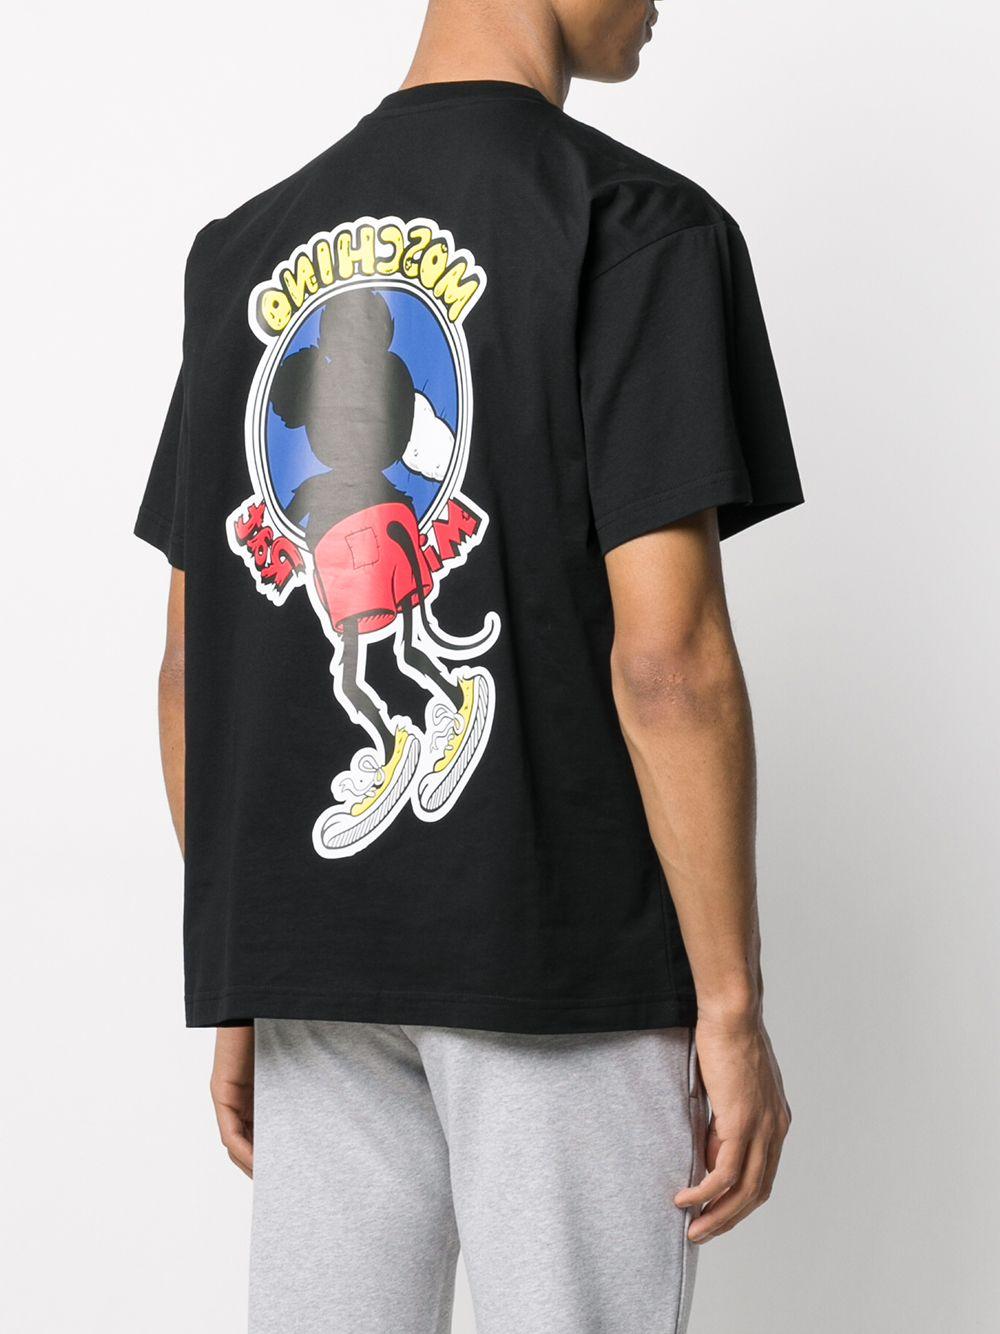 Camiseta Mickey Rat Moschino de hombre de color Negro | Lyst